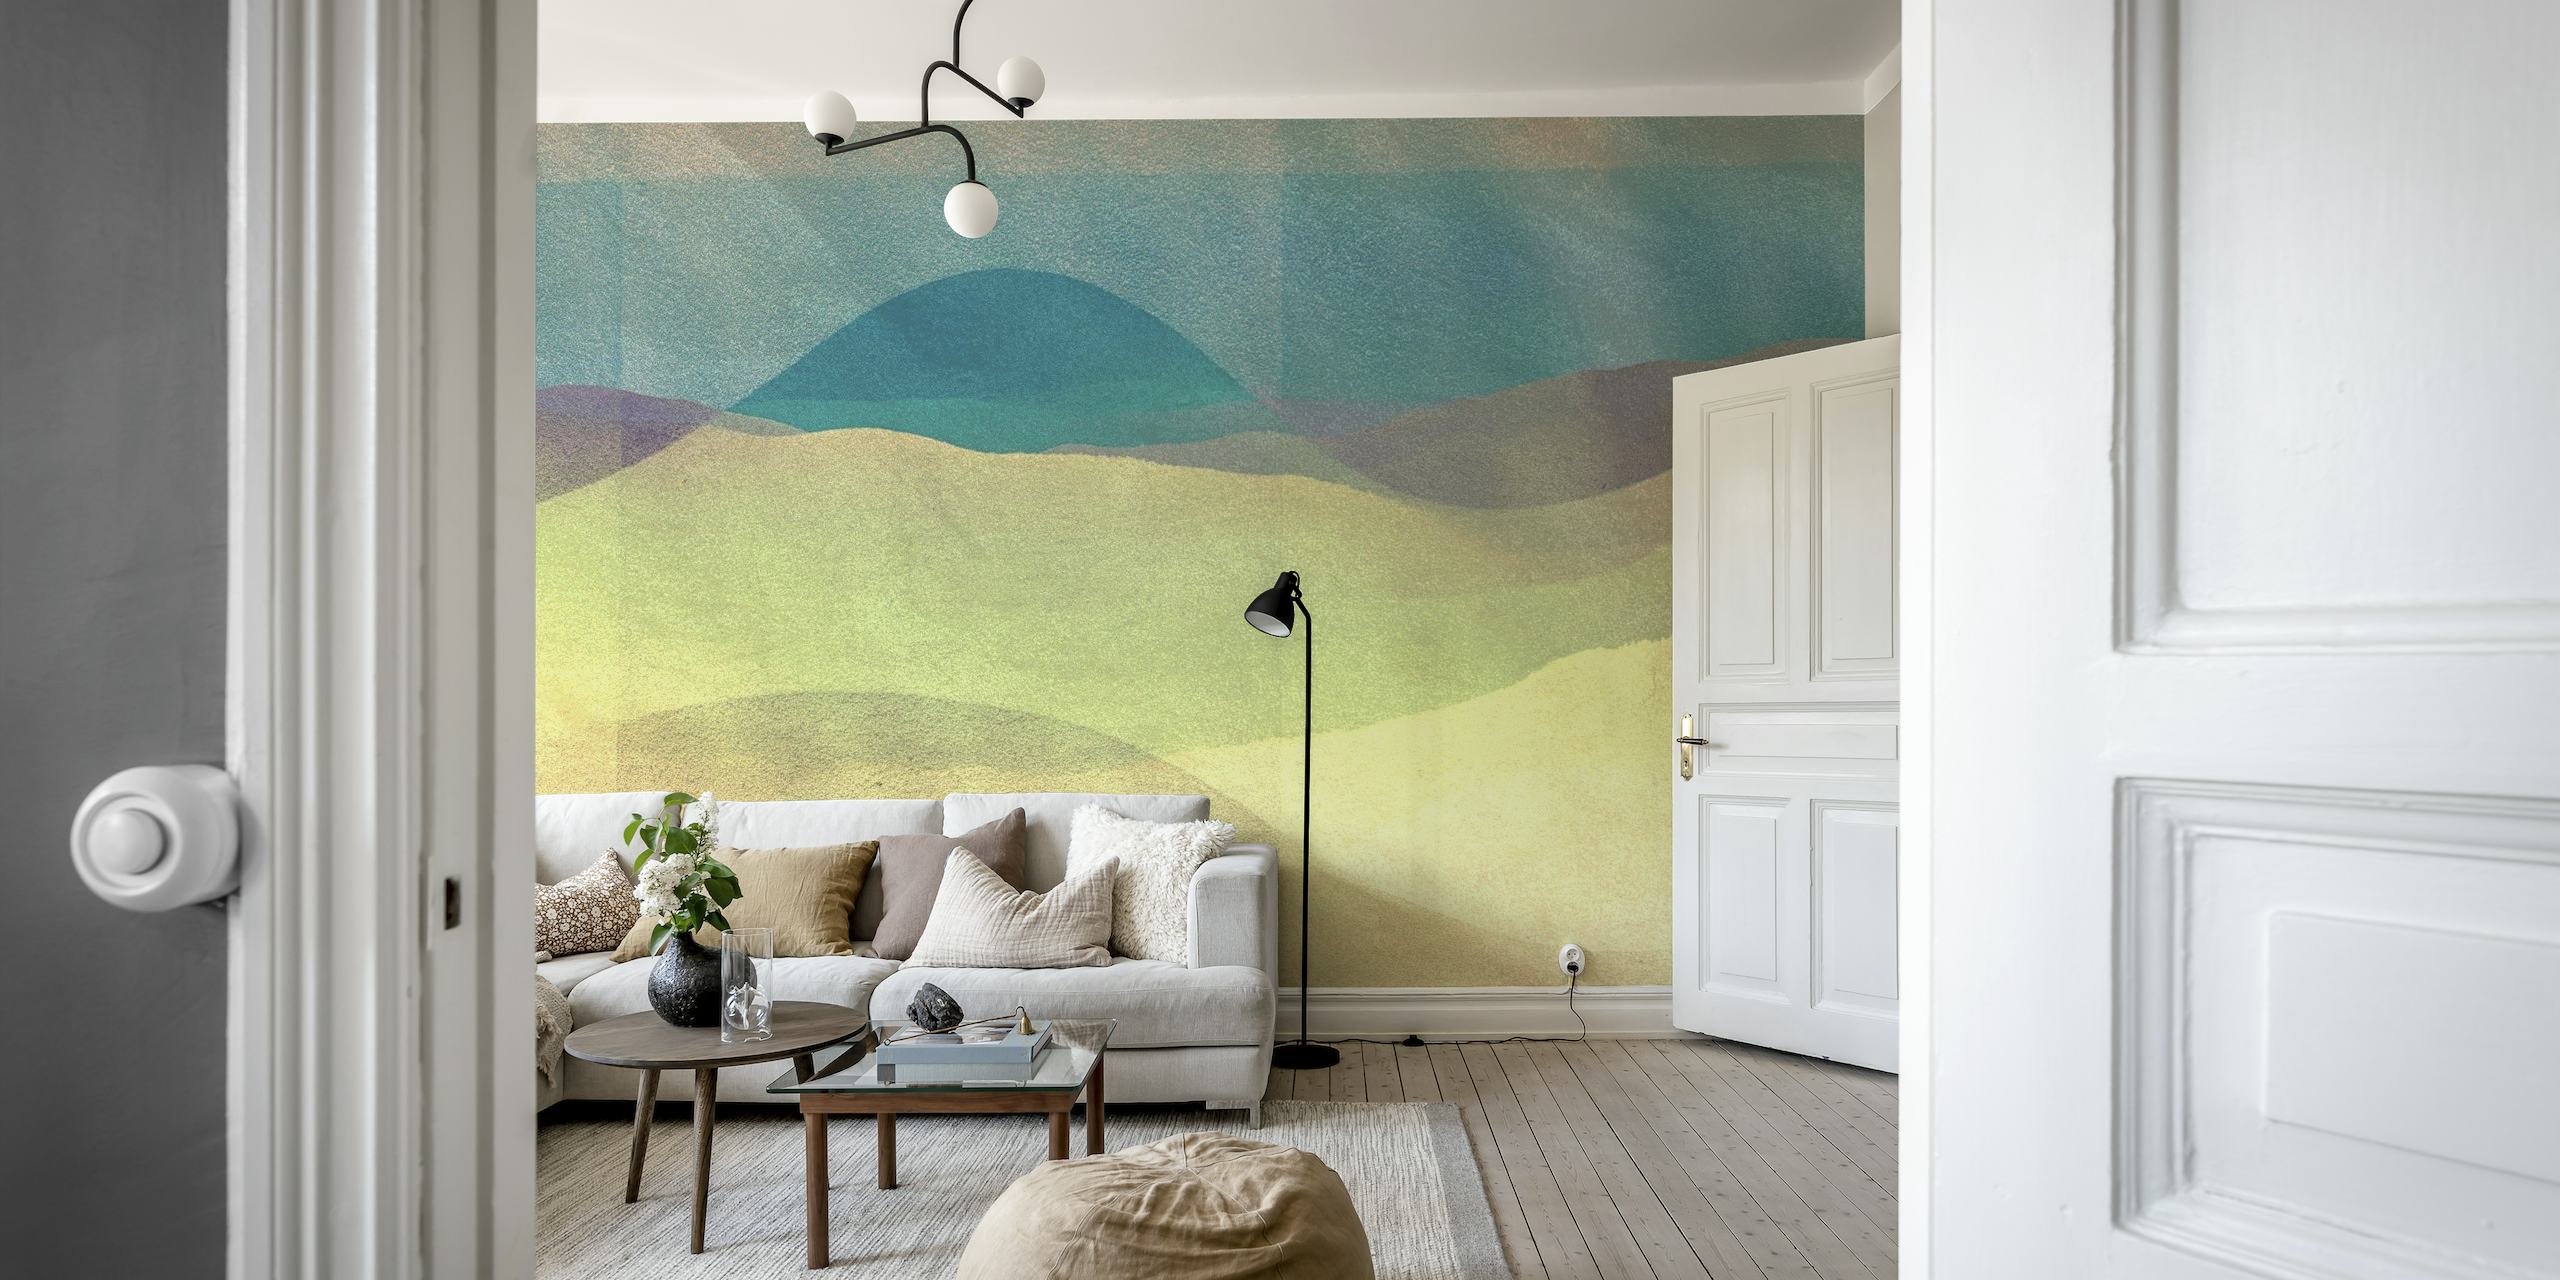 Apstraktna zidna slika za ljetno sunce s plavozelenim, zelenim i žutosmeđim nijansama u mirnom pejzažnom dizajnu.